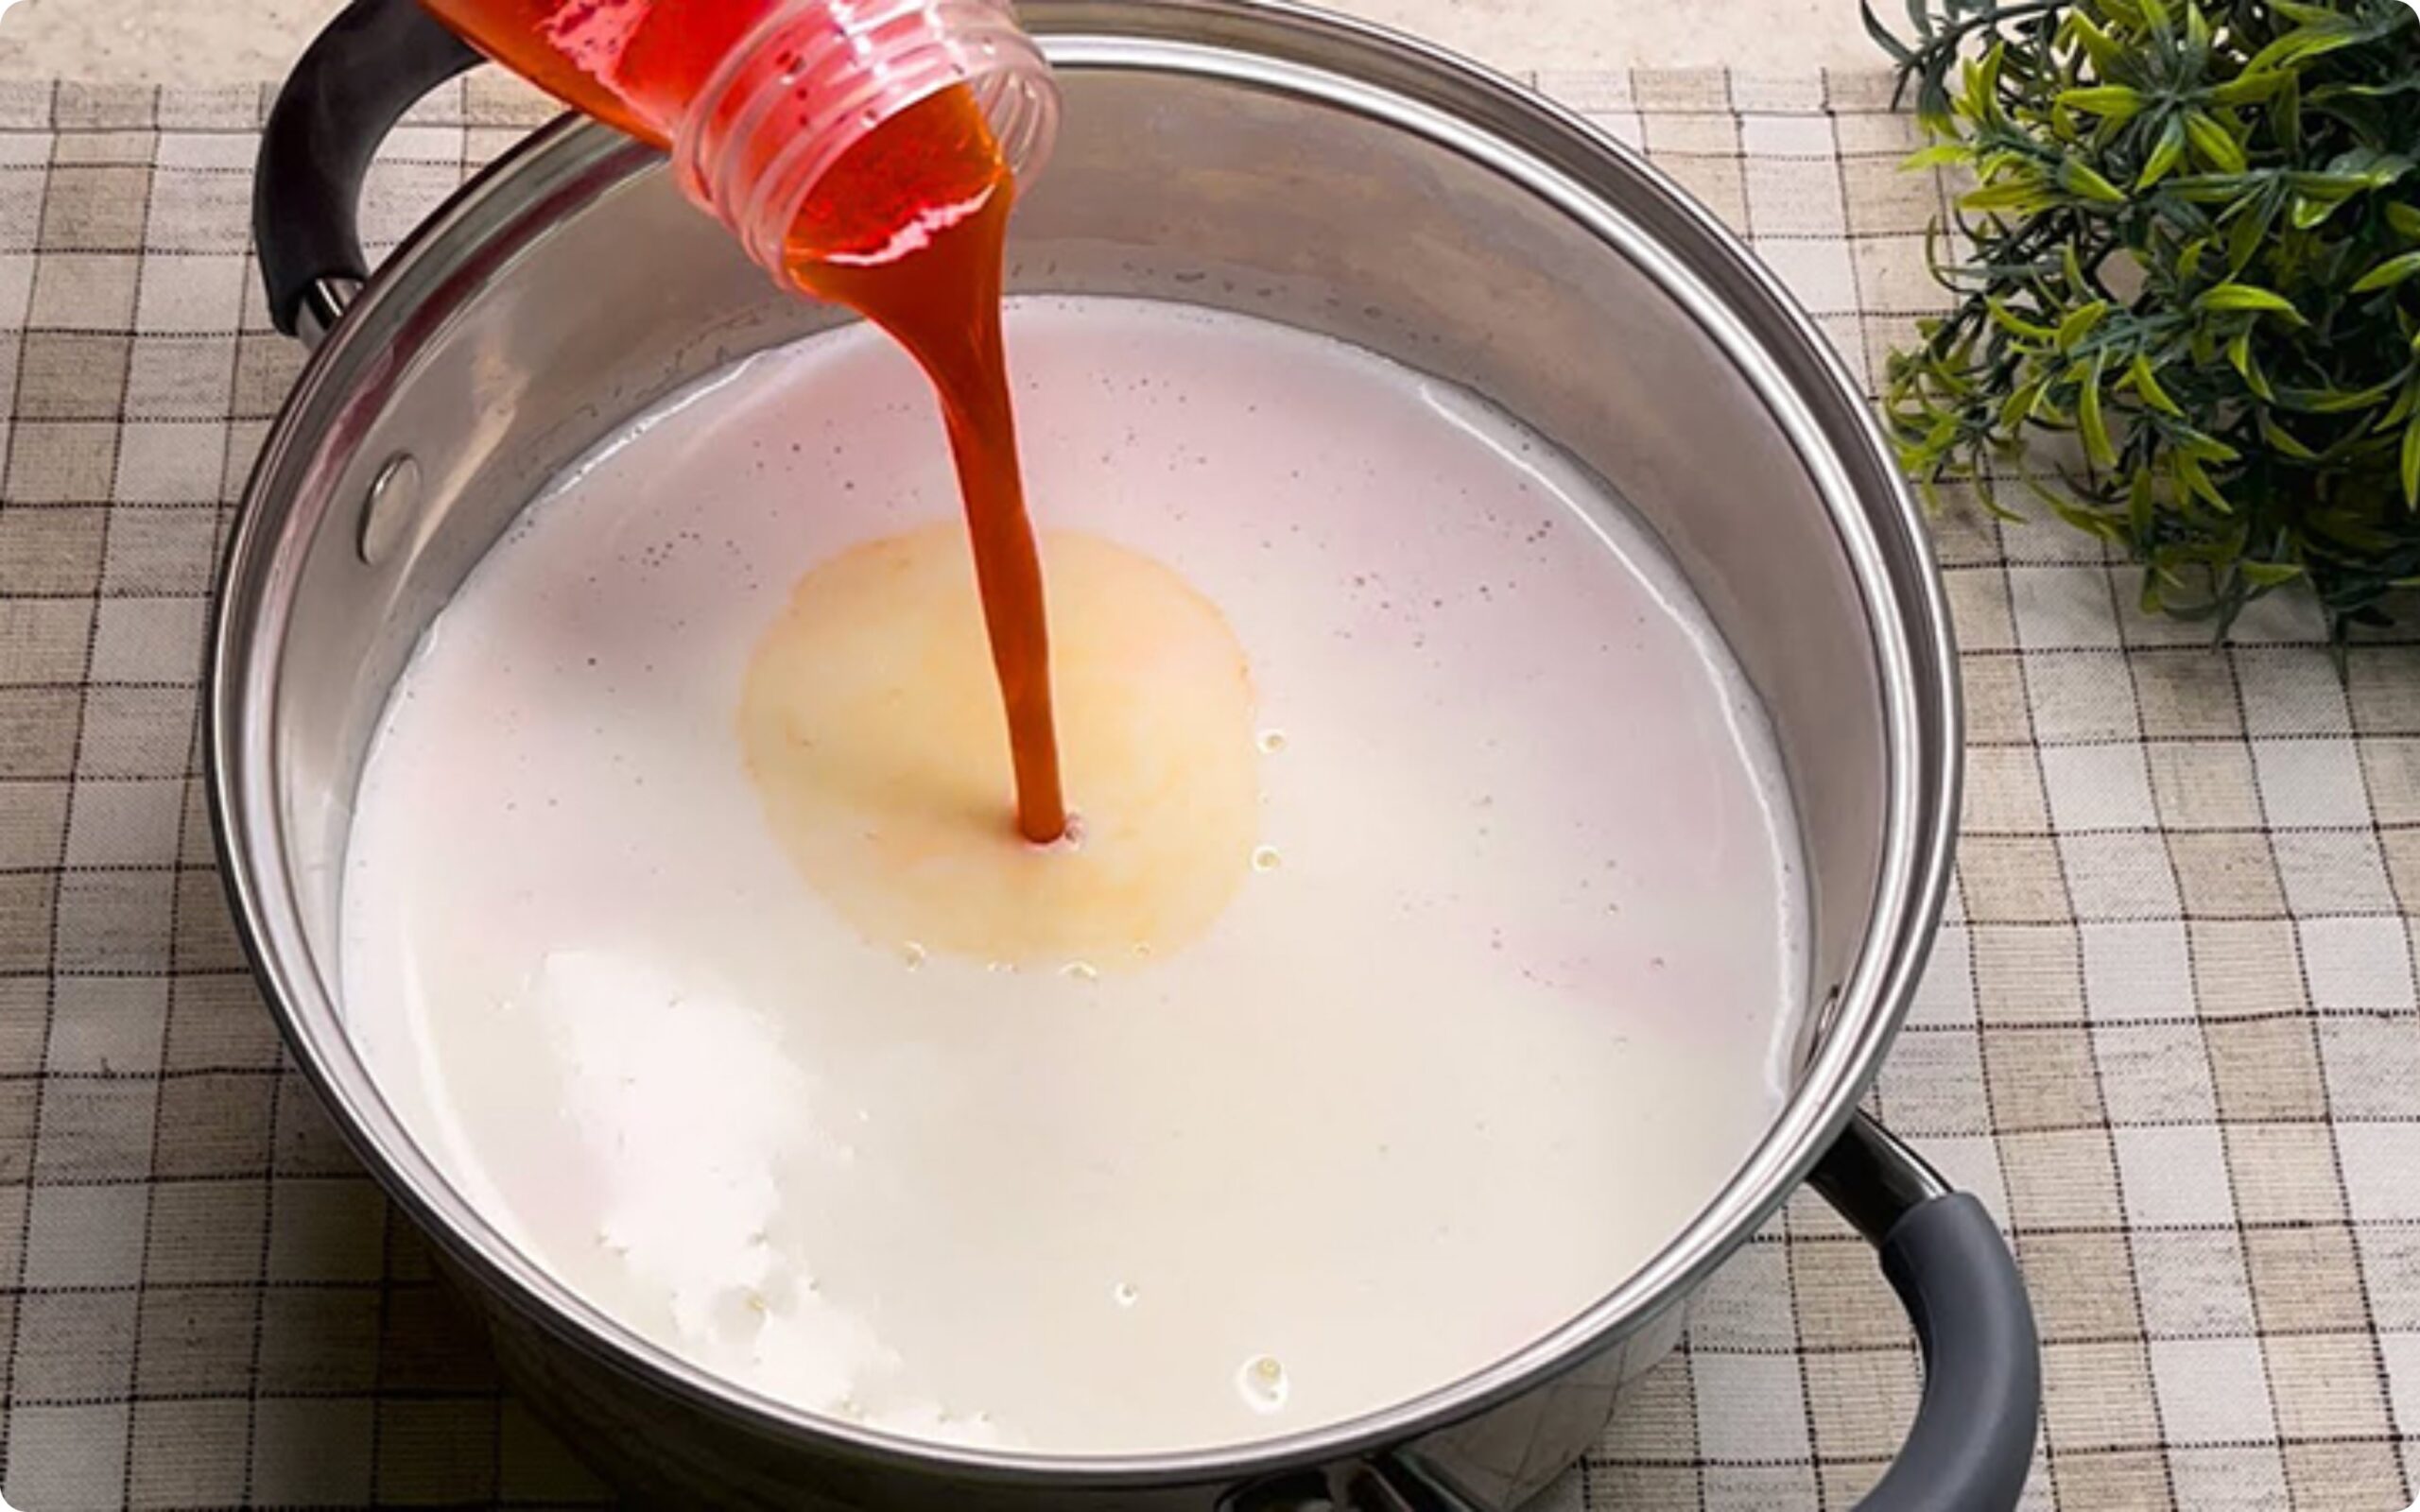 Варим молоко 15 минут и добавляем томатный сок. Натуральный сыр через 3 часа на столе